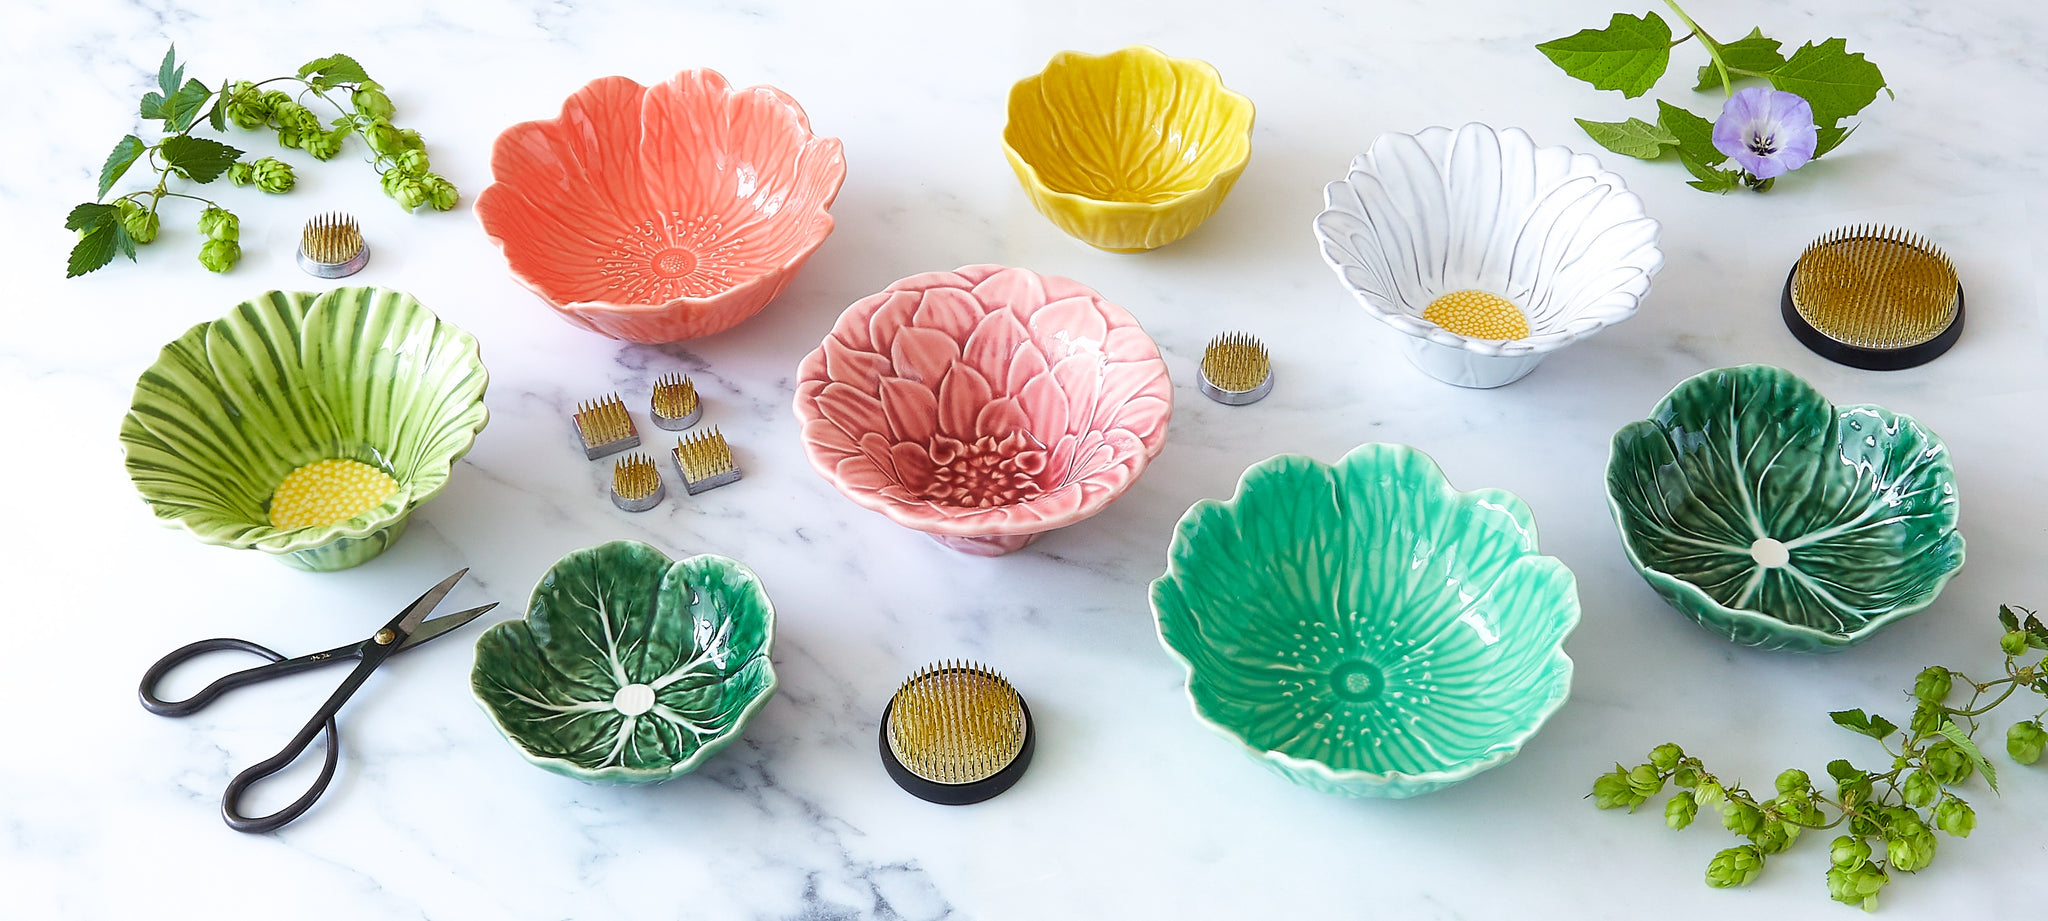 Ceramic, flower-shaped bowls for flower arranging